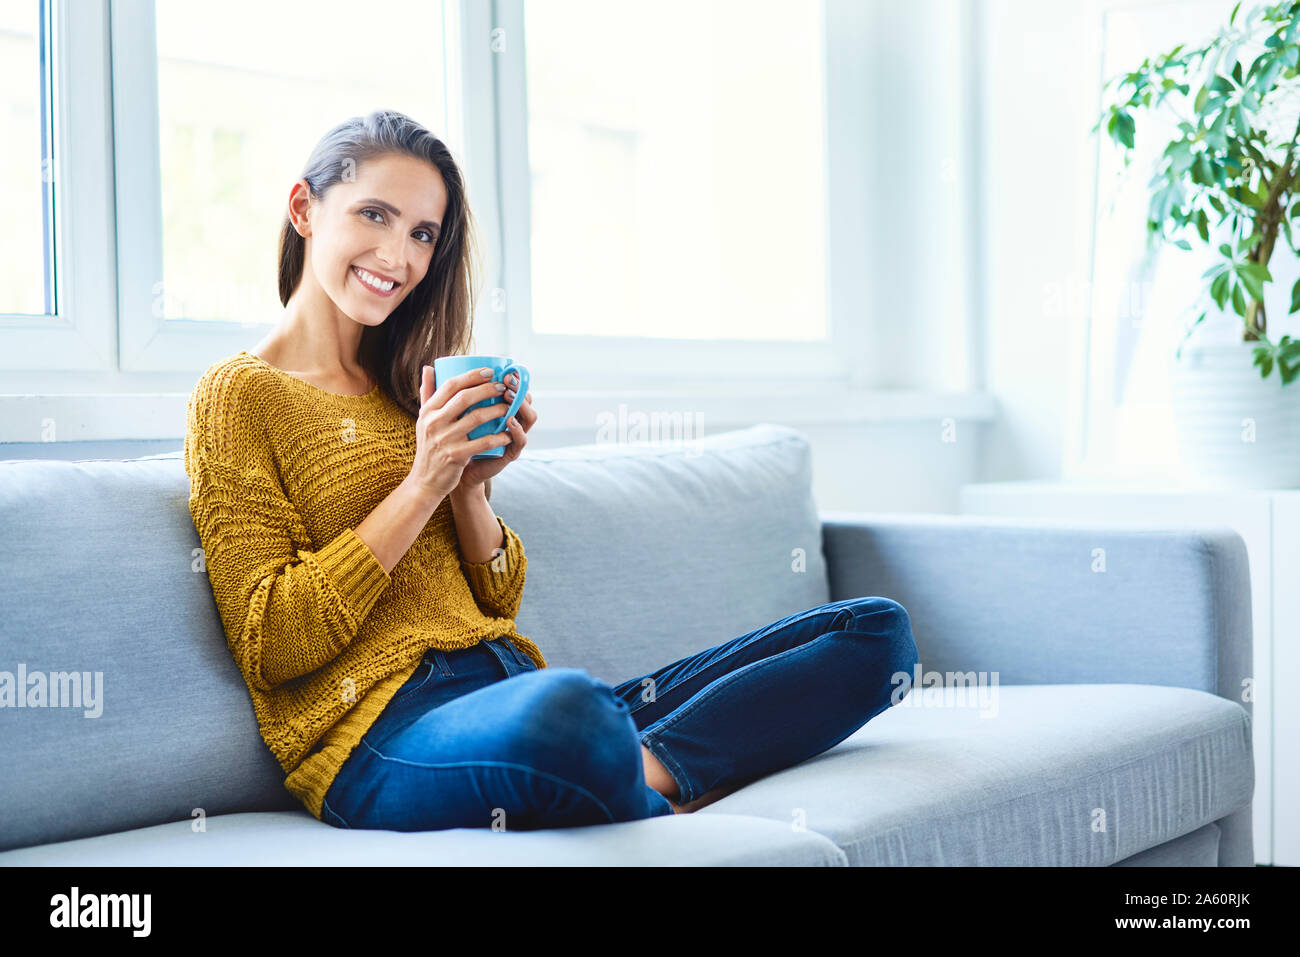 Belle jeune femme assise sur un canapé à boire du café et looking at camera Banque D'Images